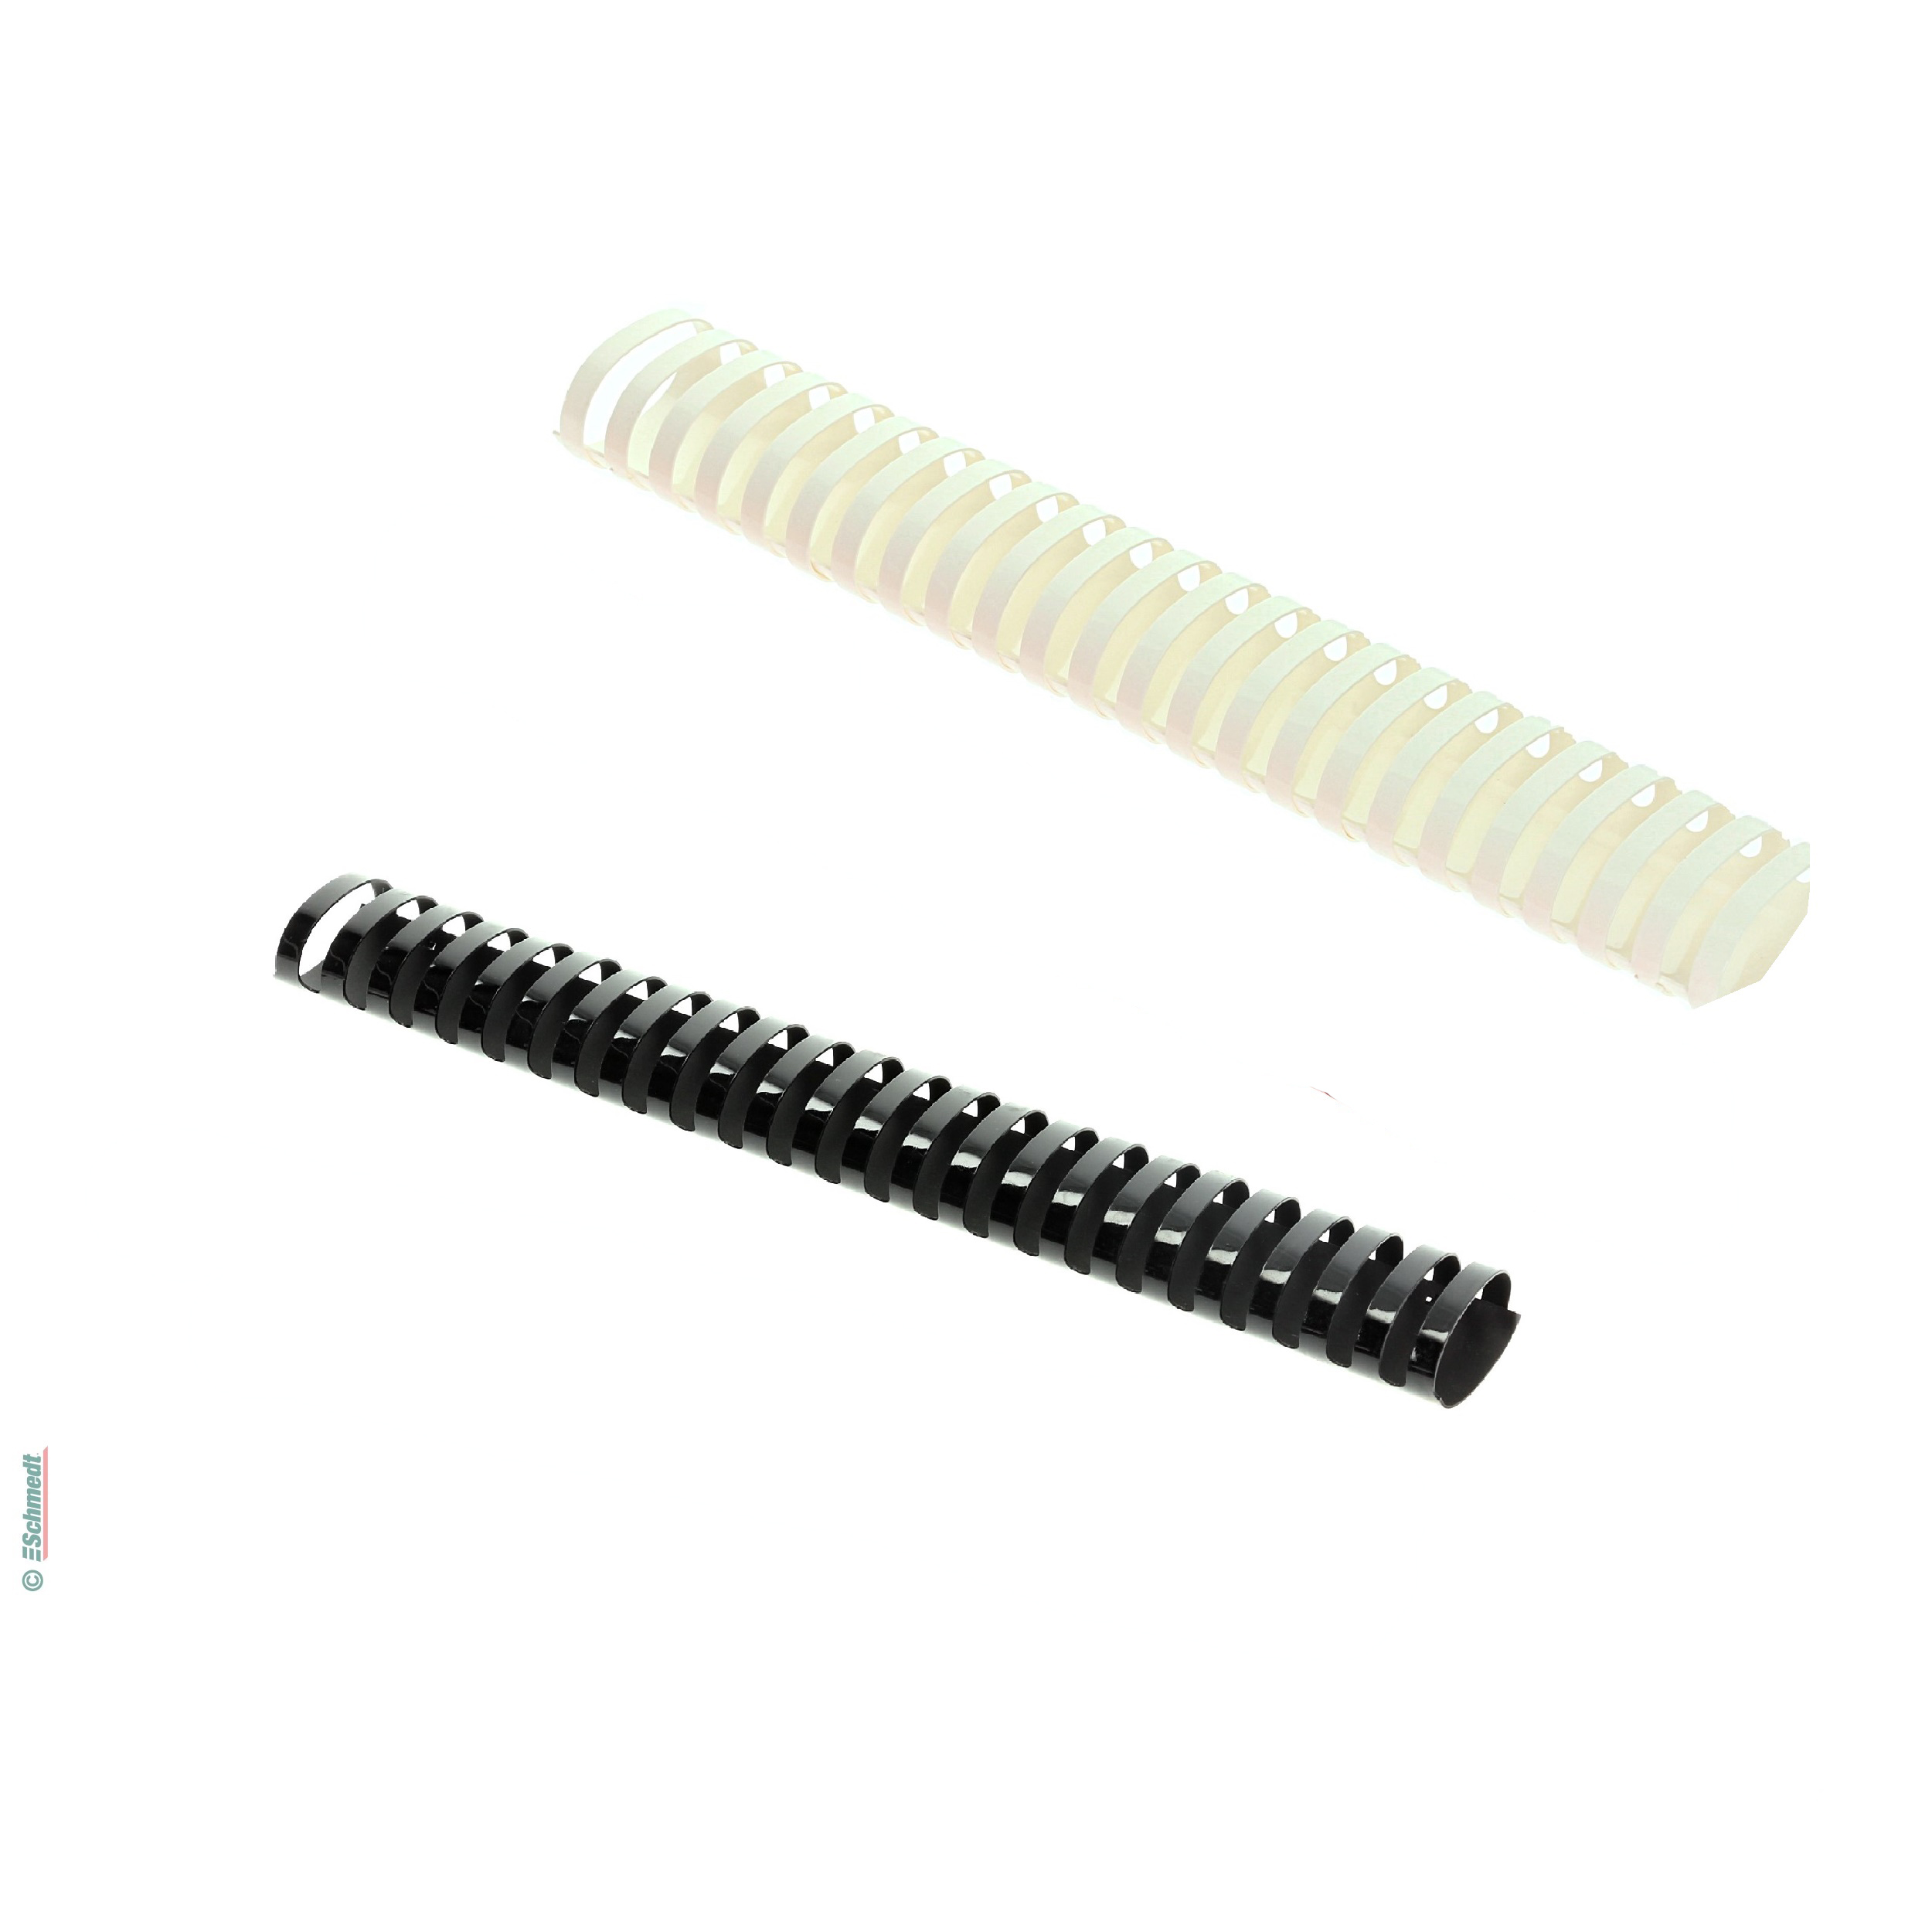 Anneaux plastiques - ovals - Pas US - 21 boucles - pour DIN A4 - pour traiter dans des machine à relier anneaux plastiques...